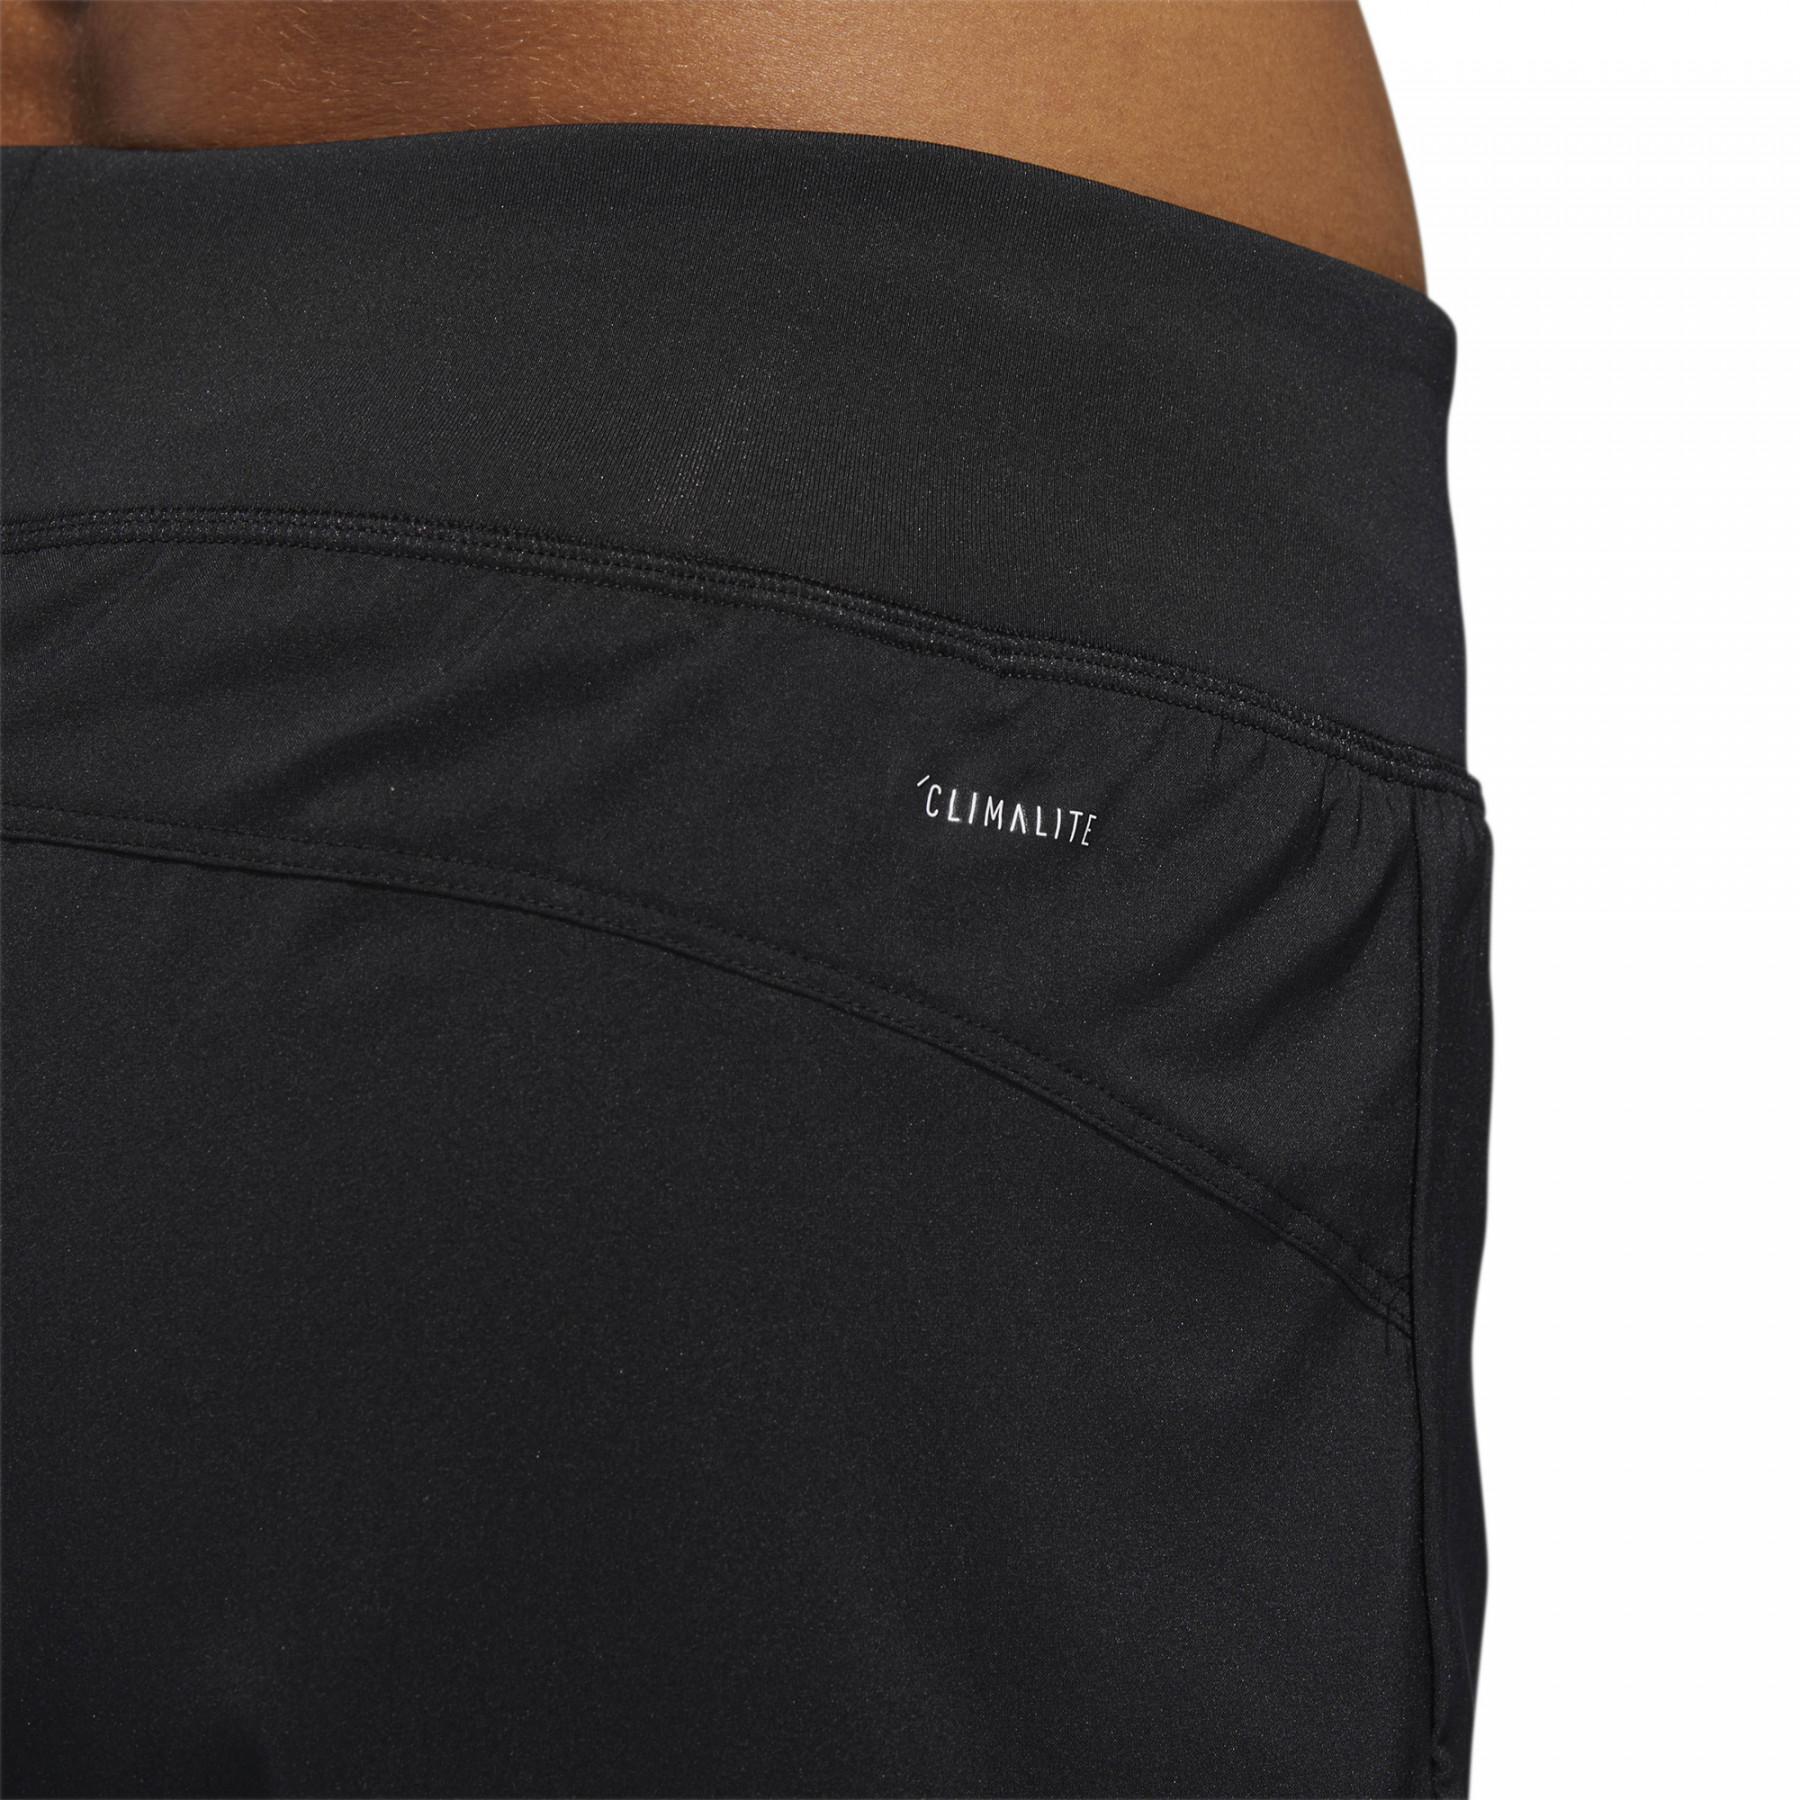 Women's shorts adidas en toile Deux-en-Un